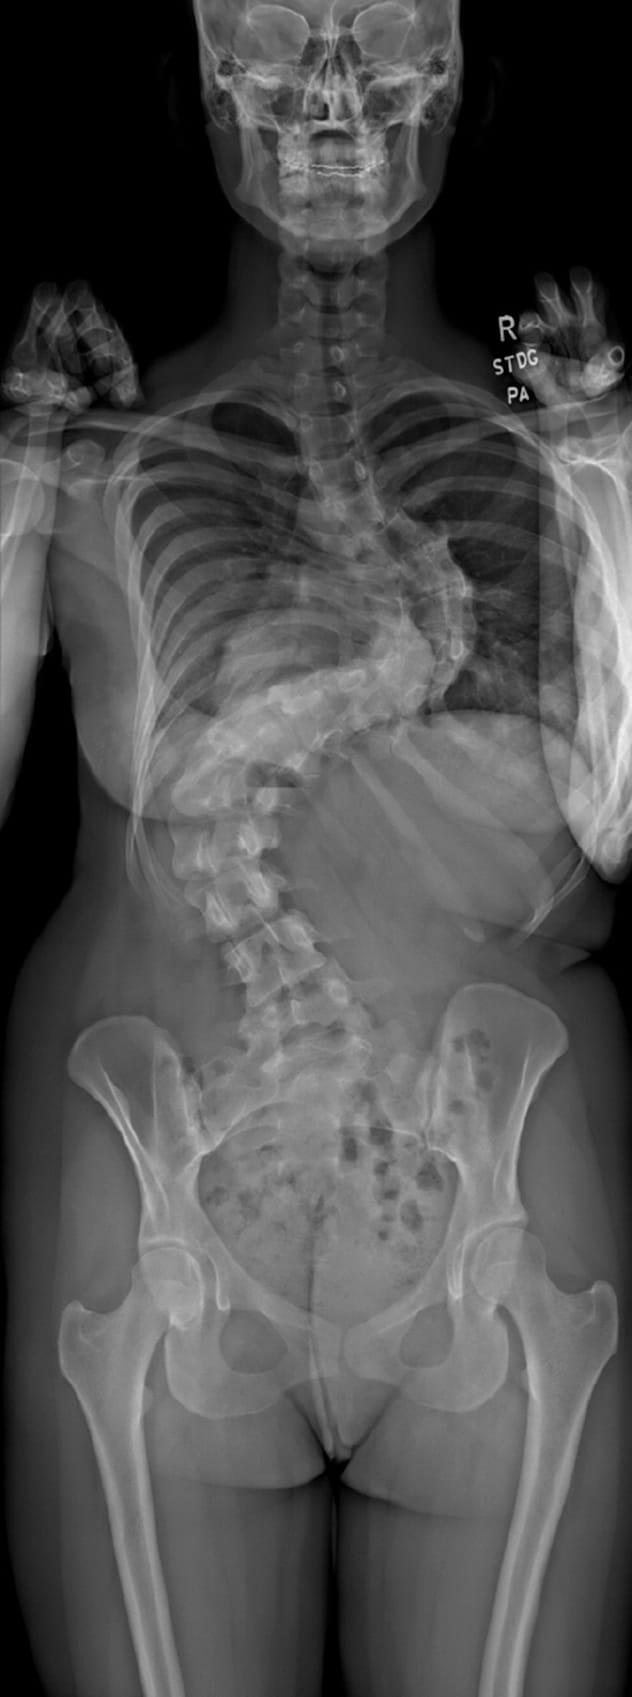 La radiografía preoperatoria muestra escoliosis